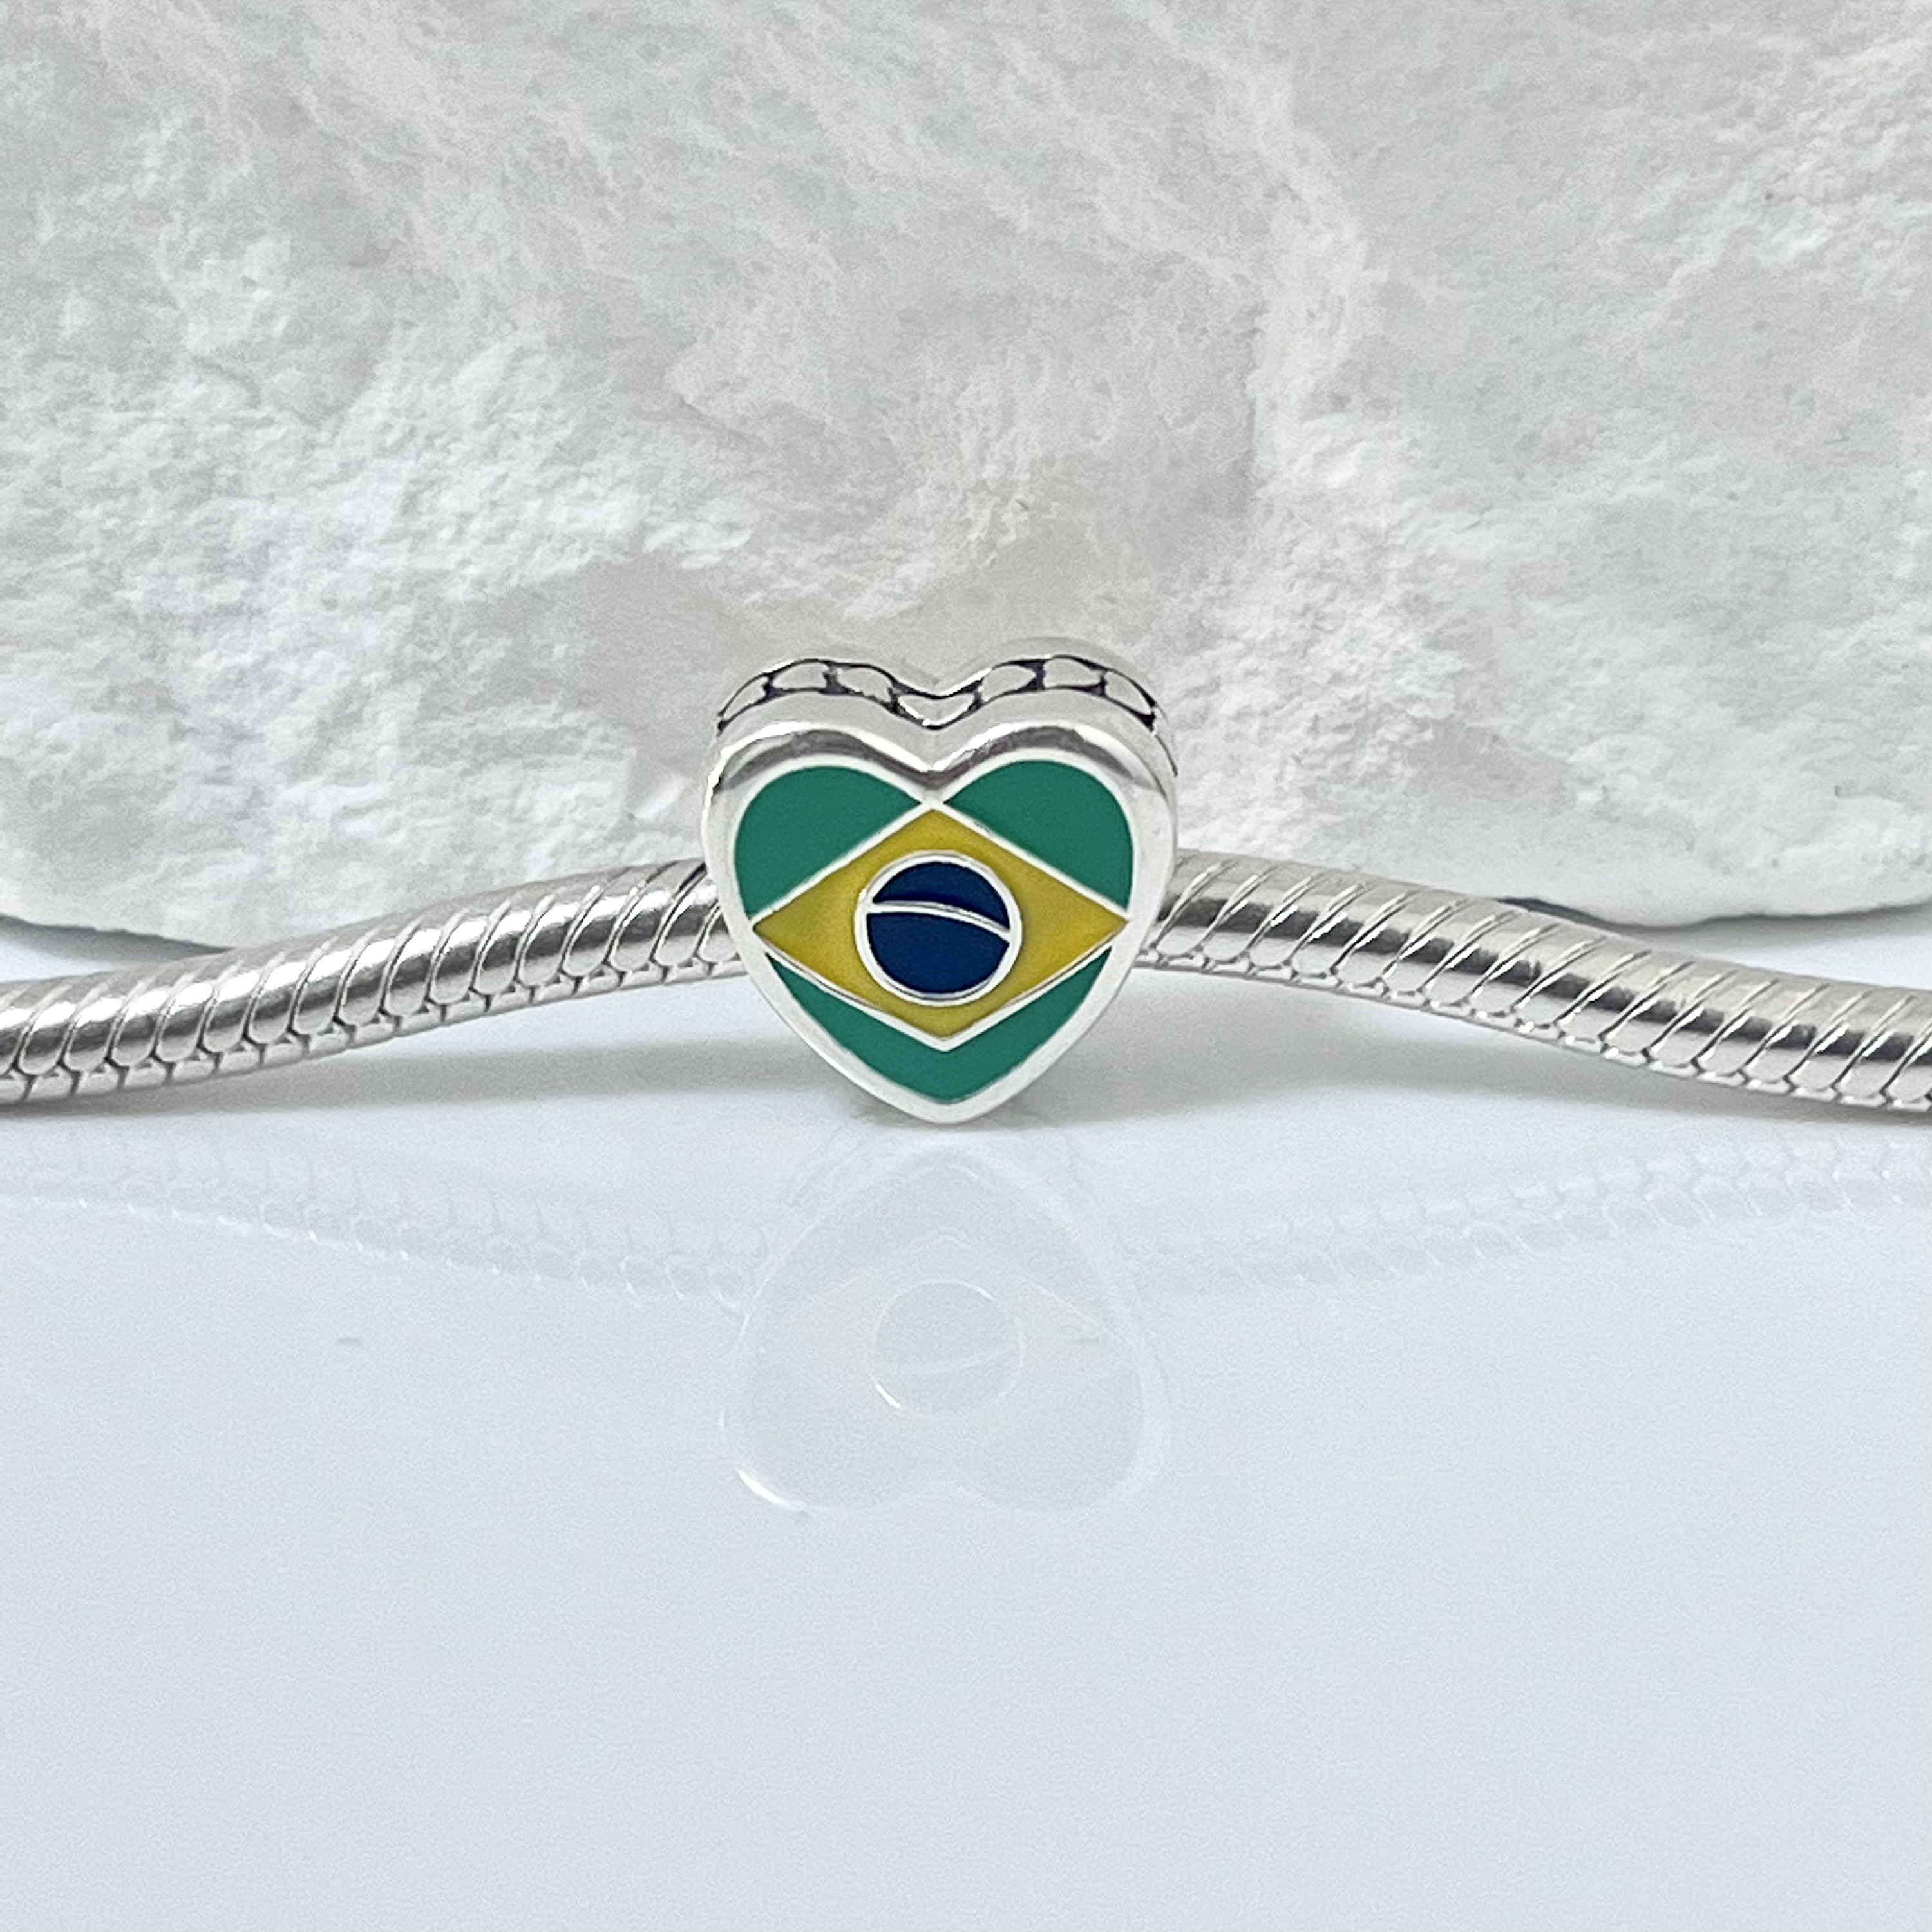 Pandora Brasil Brazil Flag Bracelet Heart Bead Charm Love Brazil Button,  S925 Sterling Silver Jewelry for Bracelet, Gift Present for Her 